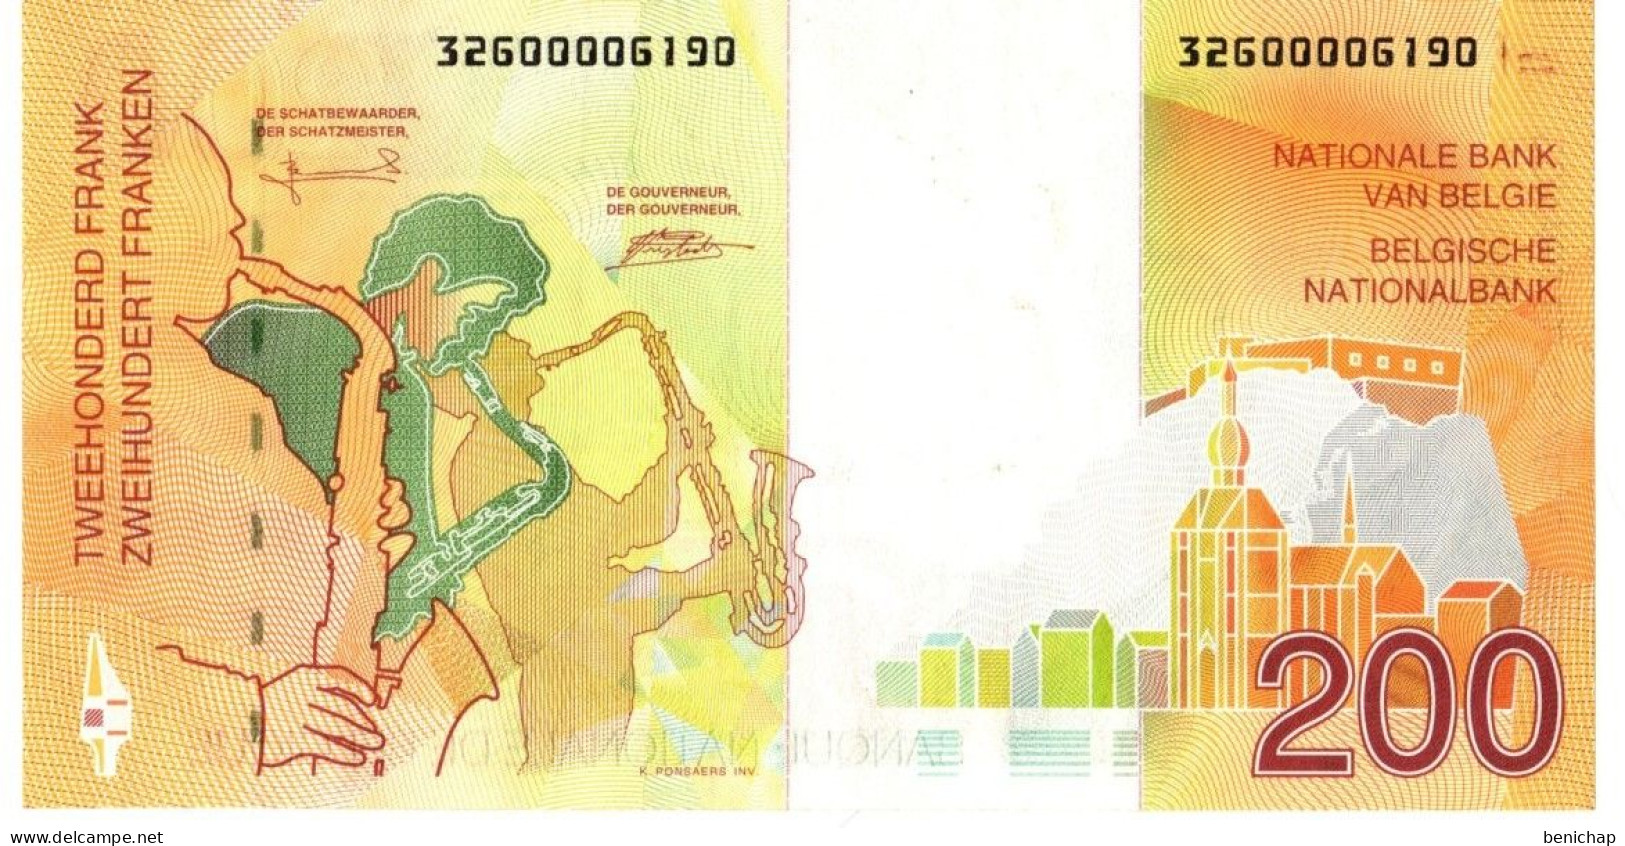 UNC P.148 - 200 Francs Frank Adophe Sax-Saxophone - Belgique Belgïe - 1995 - Ce Billet Est Neuf ! - Collections